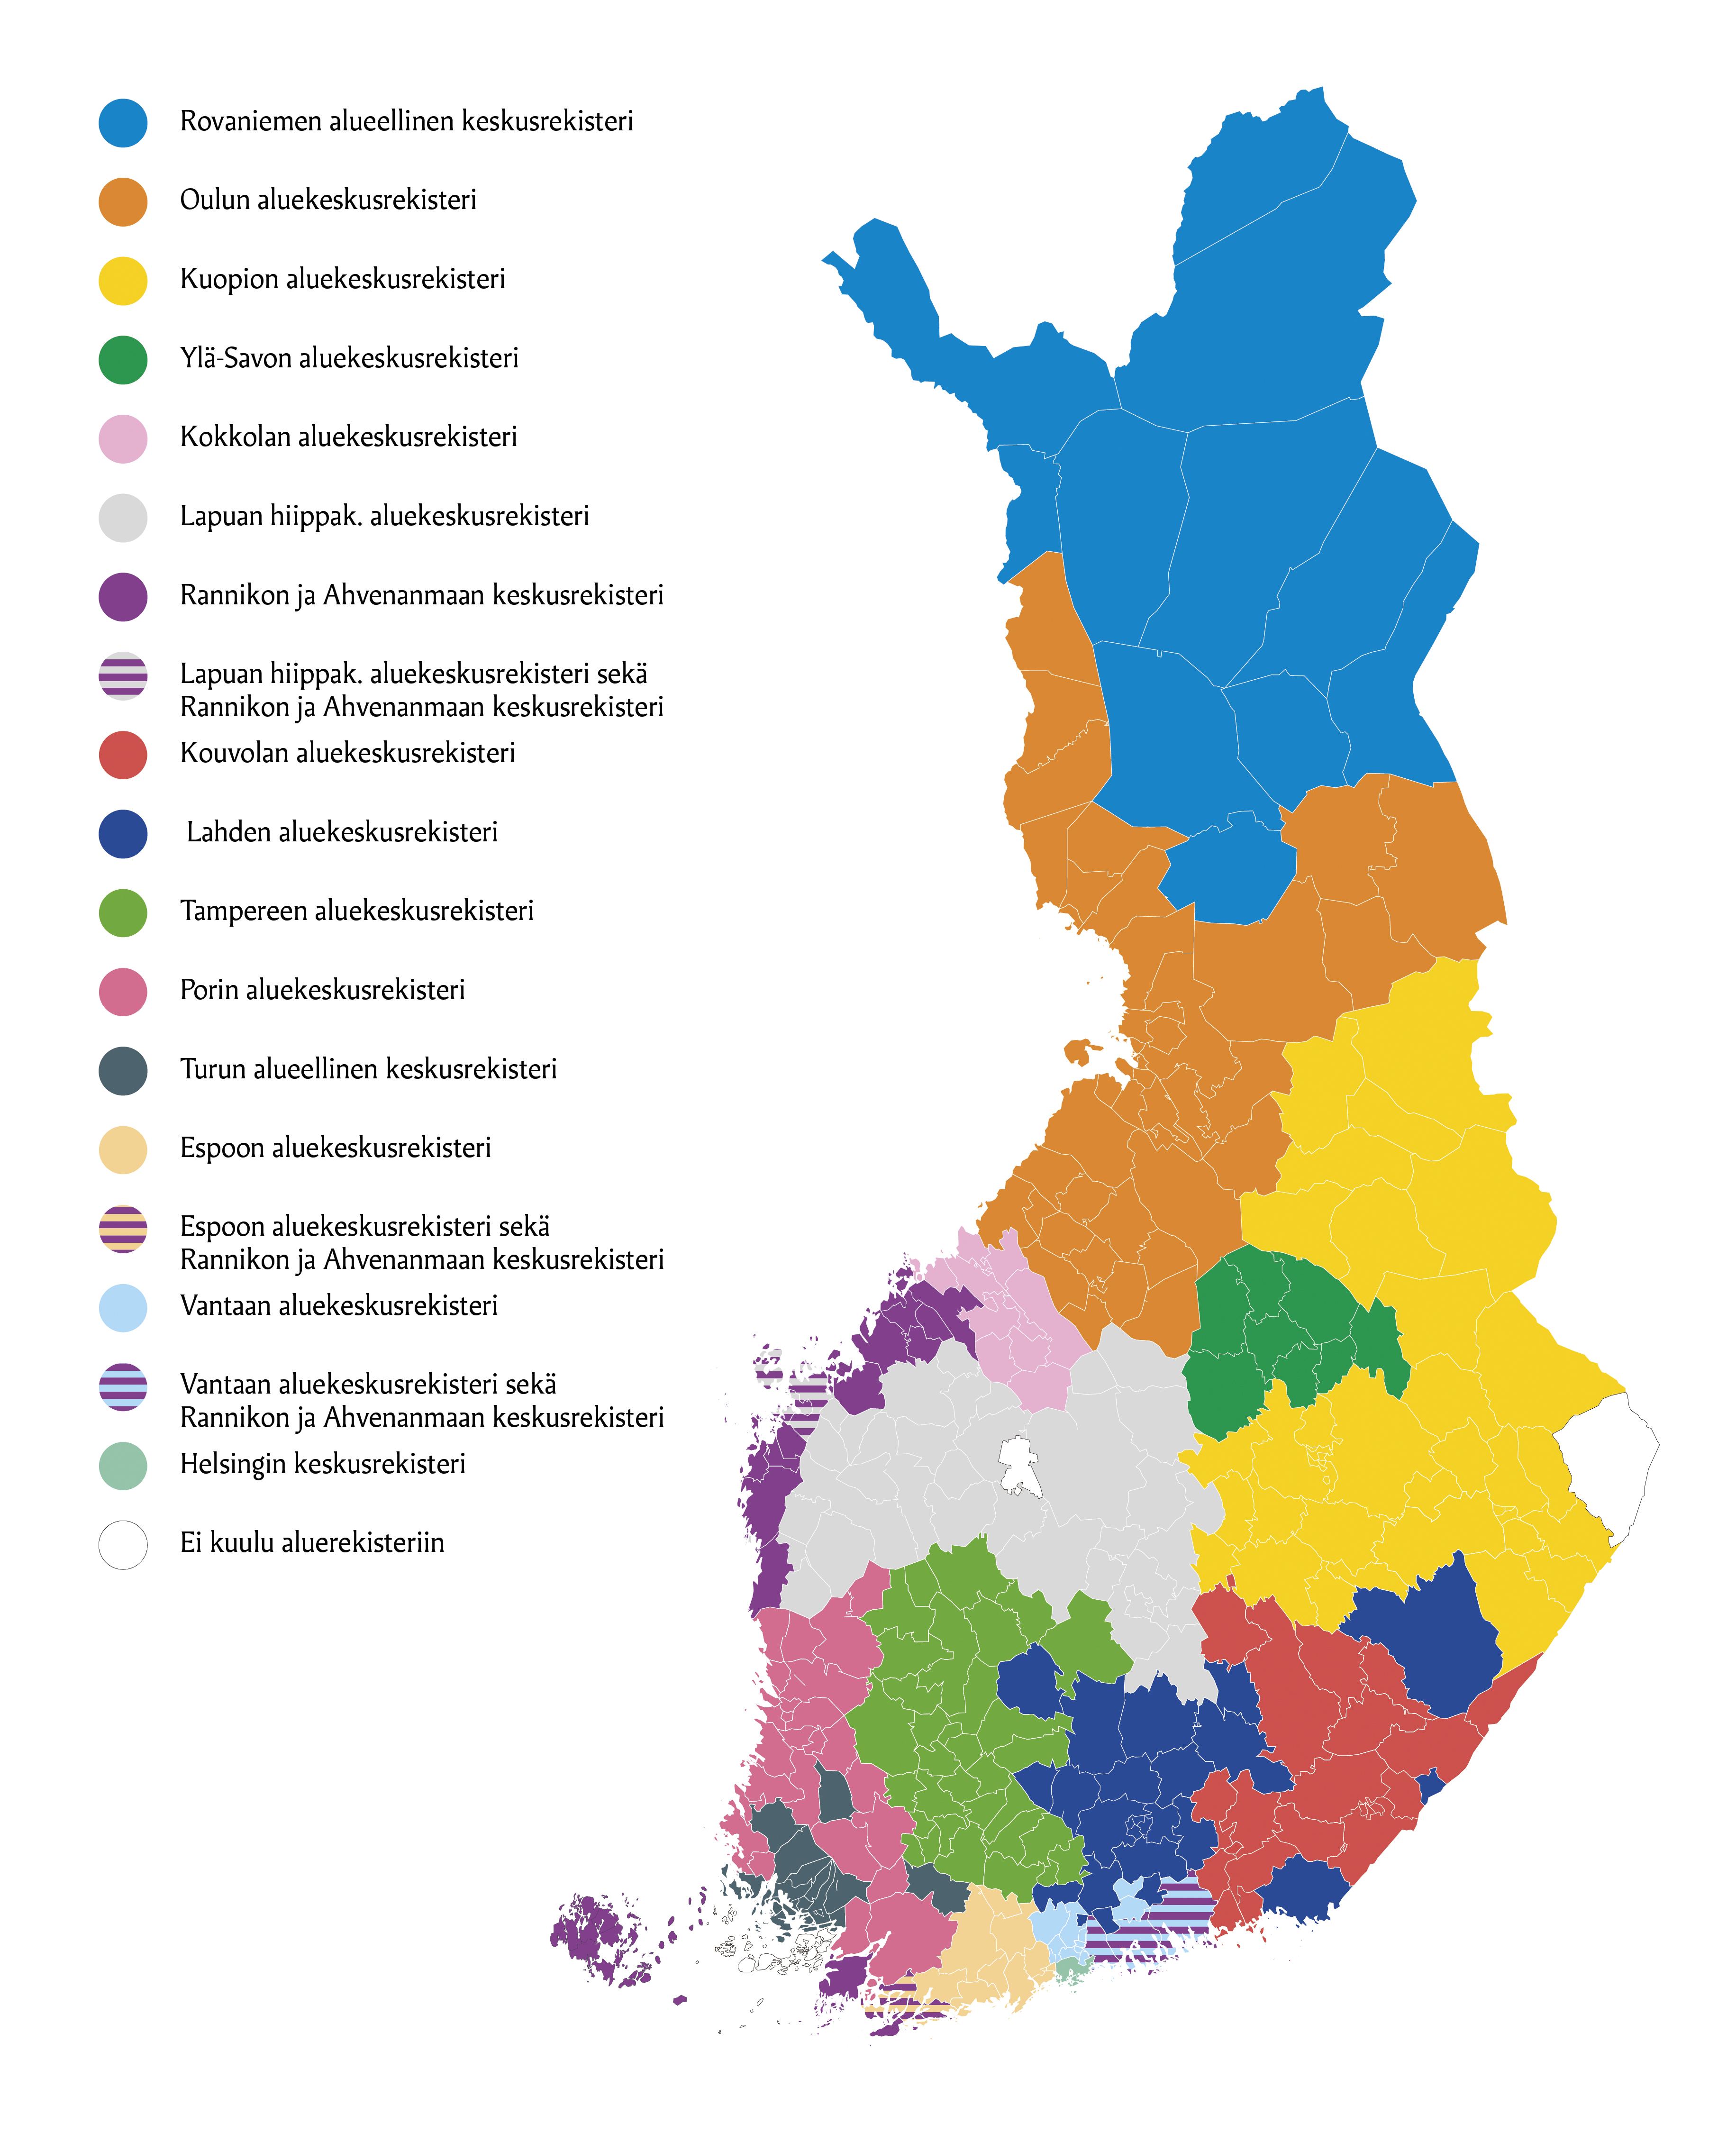 Aluekeskusrekisterit piirrettynä suomen kartalle. Vastaavat tiedot löytyvät tekstimuodossa alla olevasta tiedostosta.